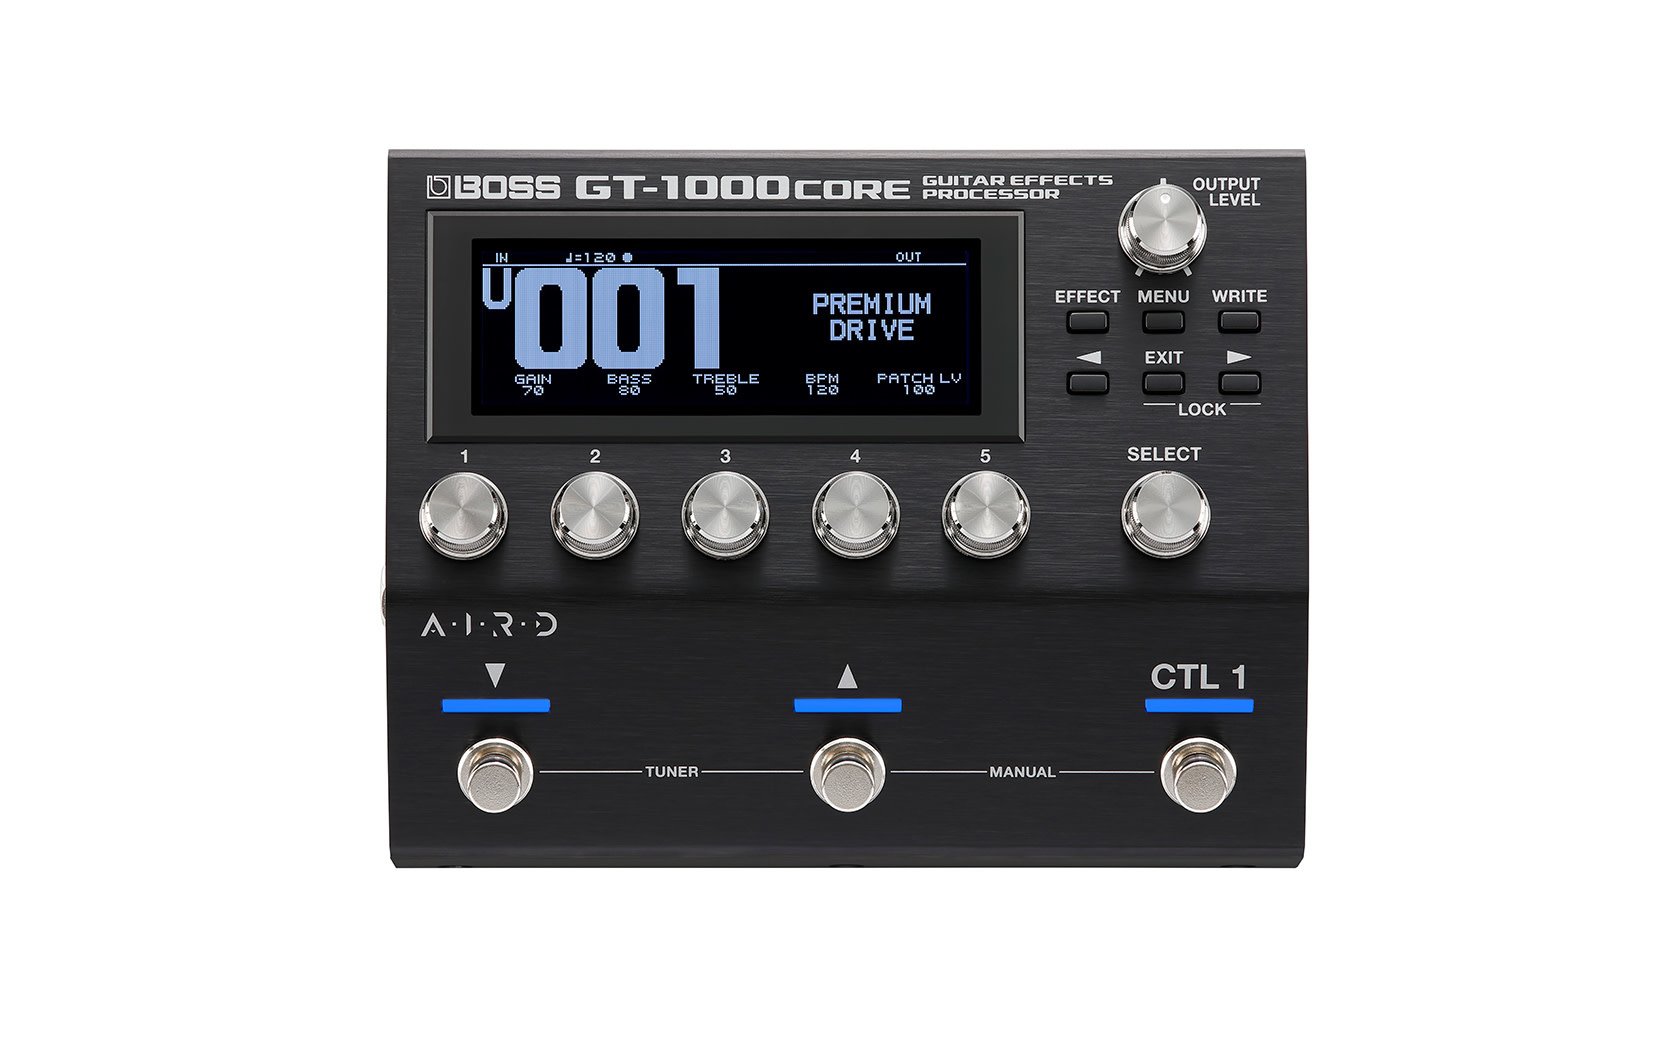 Boss GT-1000CORE Multi Effects Processor - B's Music Shop